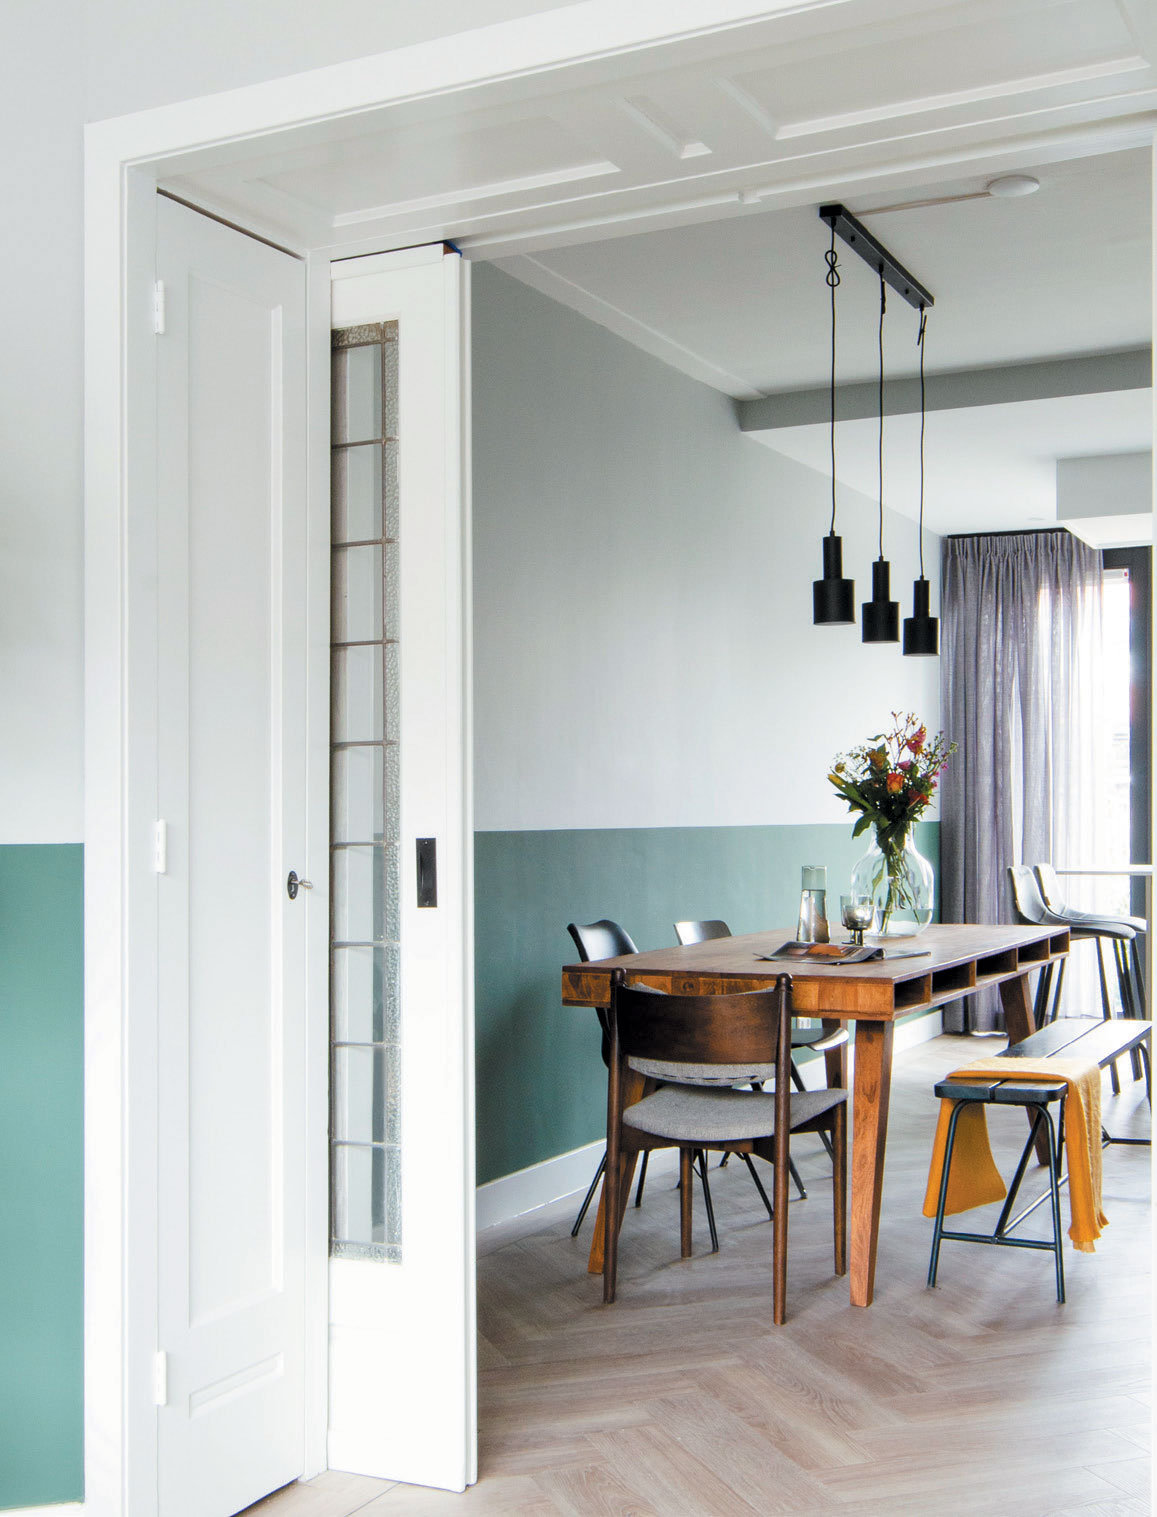 Vloeren - Tarlo Kalk eiken wit | Home Made By